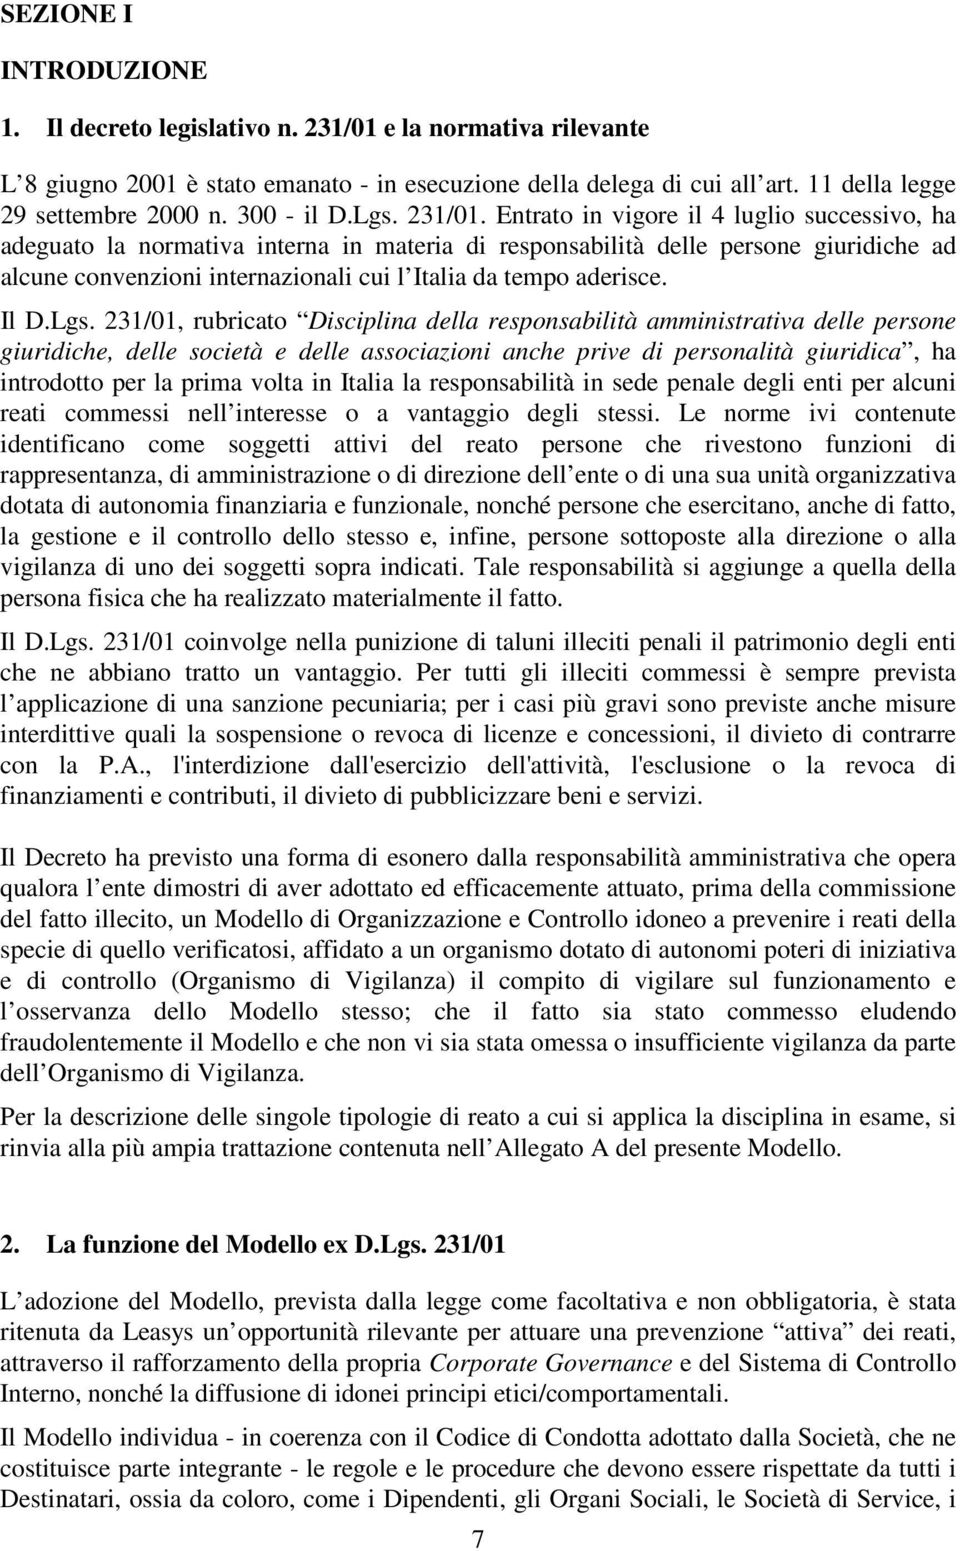 Entrato in vigore il 4 luglio successivo, ha adeguato la normativa interna in materia di responsabilità delle persone giuridiche ad alcune convenzioni internazionali cui l Italia da tempo aderisce.